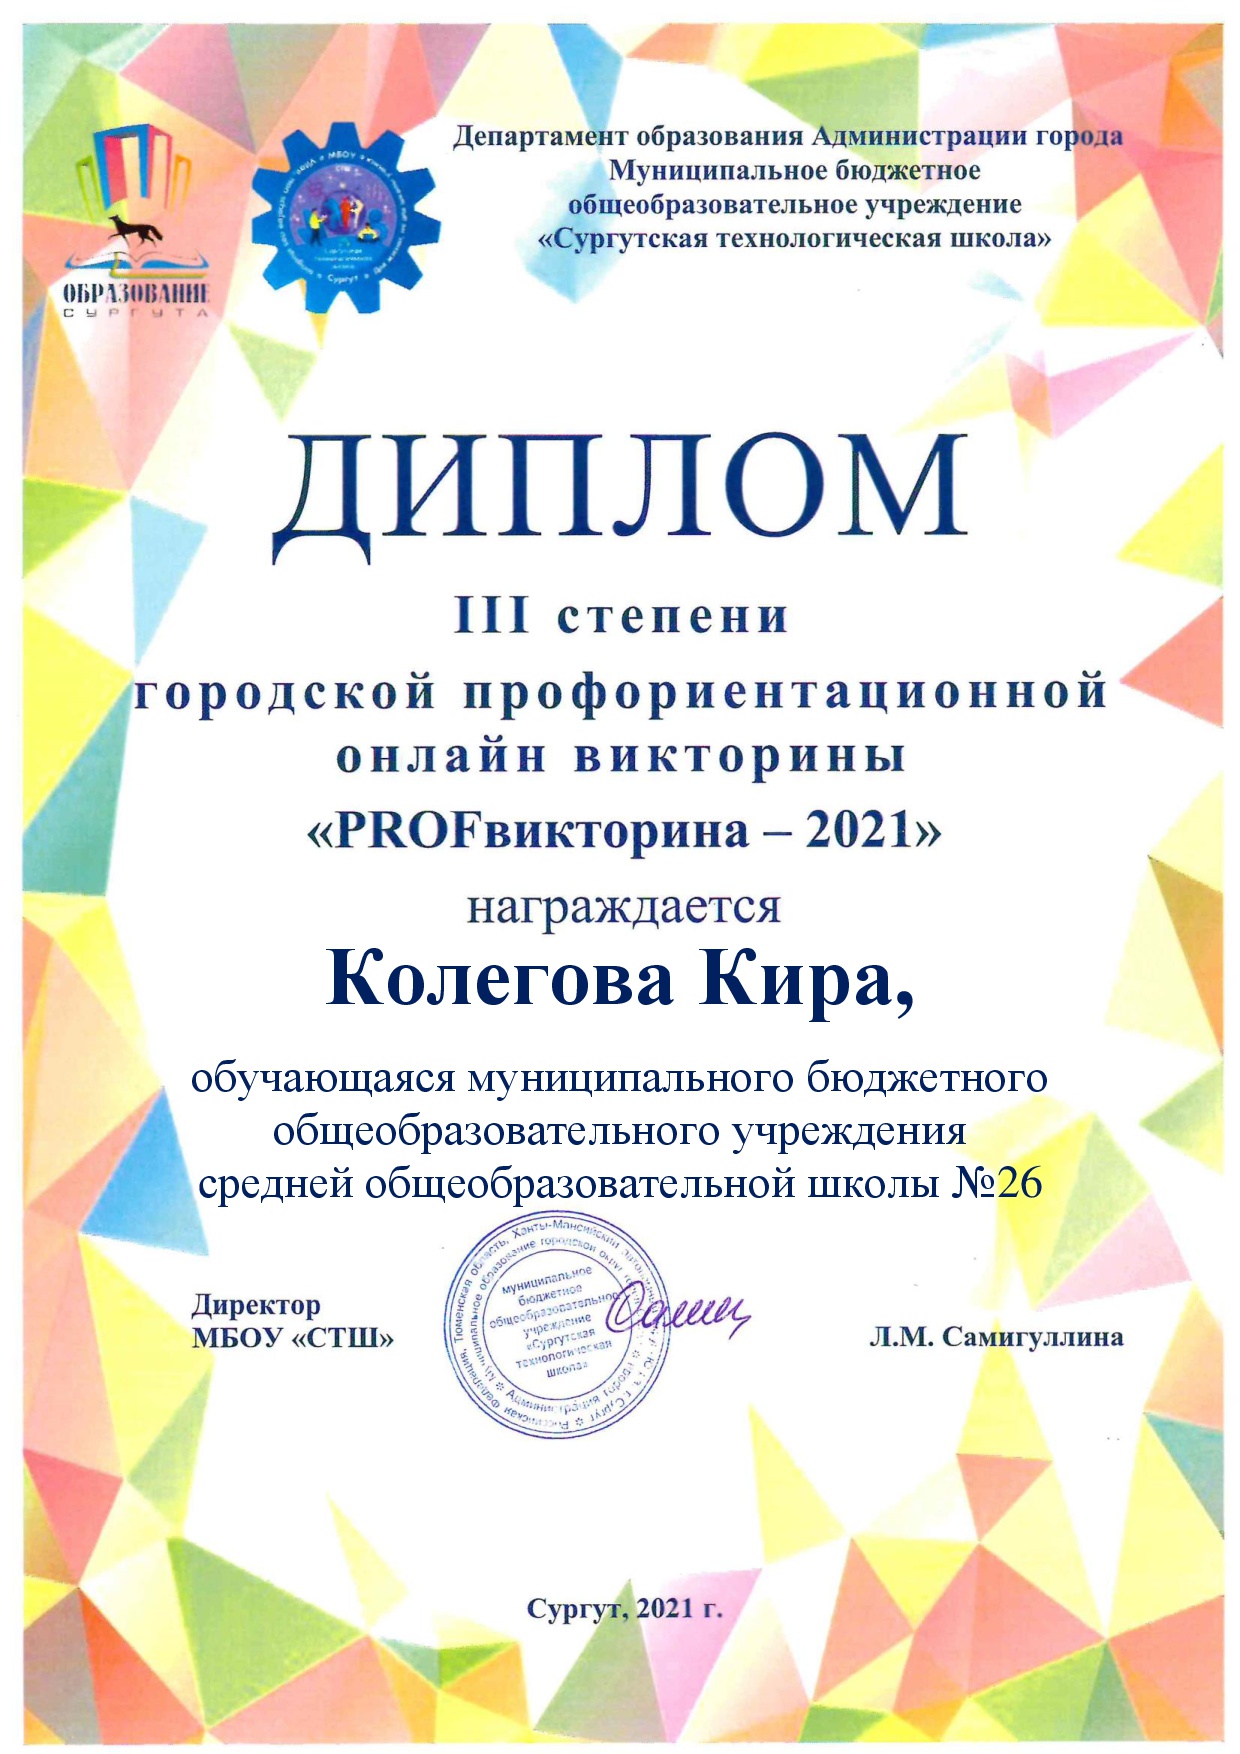 Диплом городской профориентационной онлайн-викторины «PROFвикторина-2021»